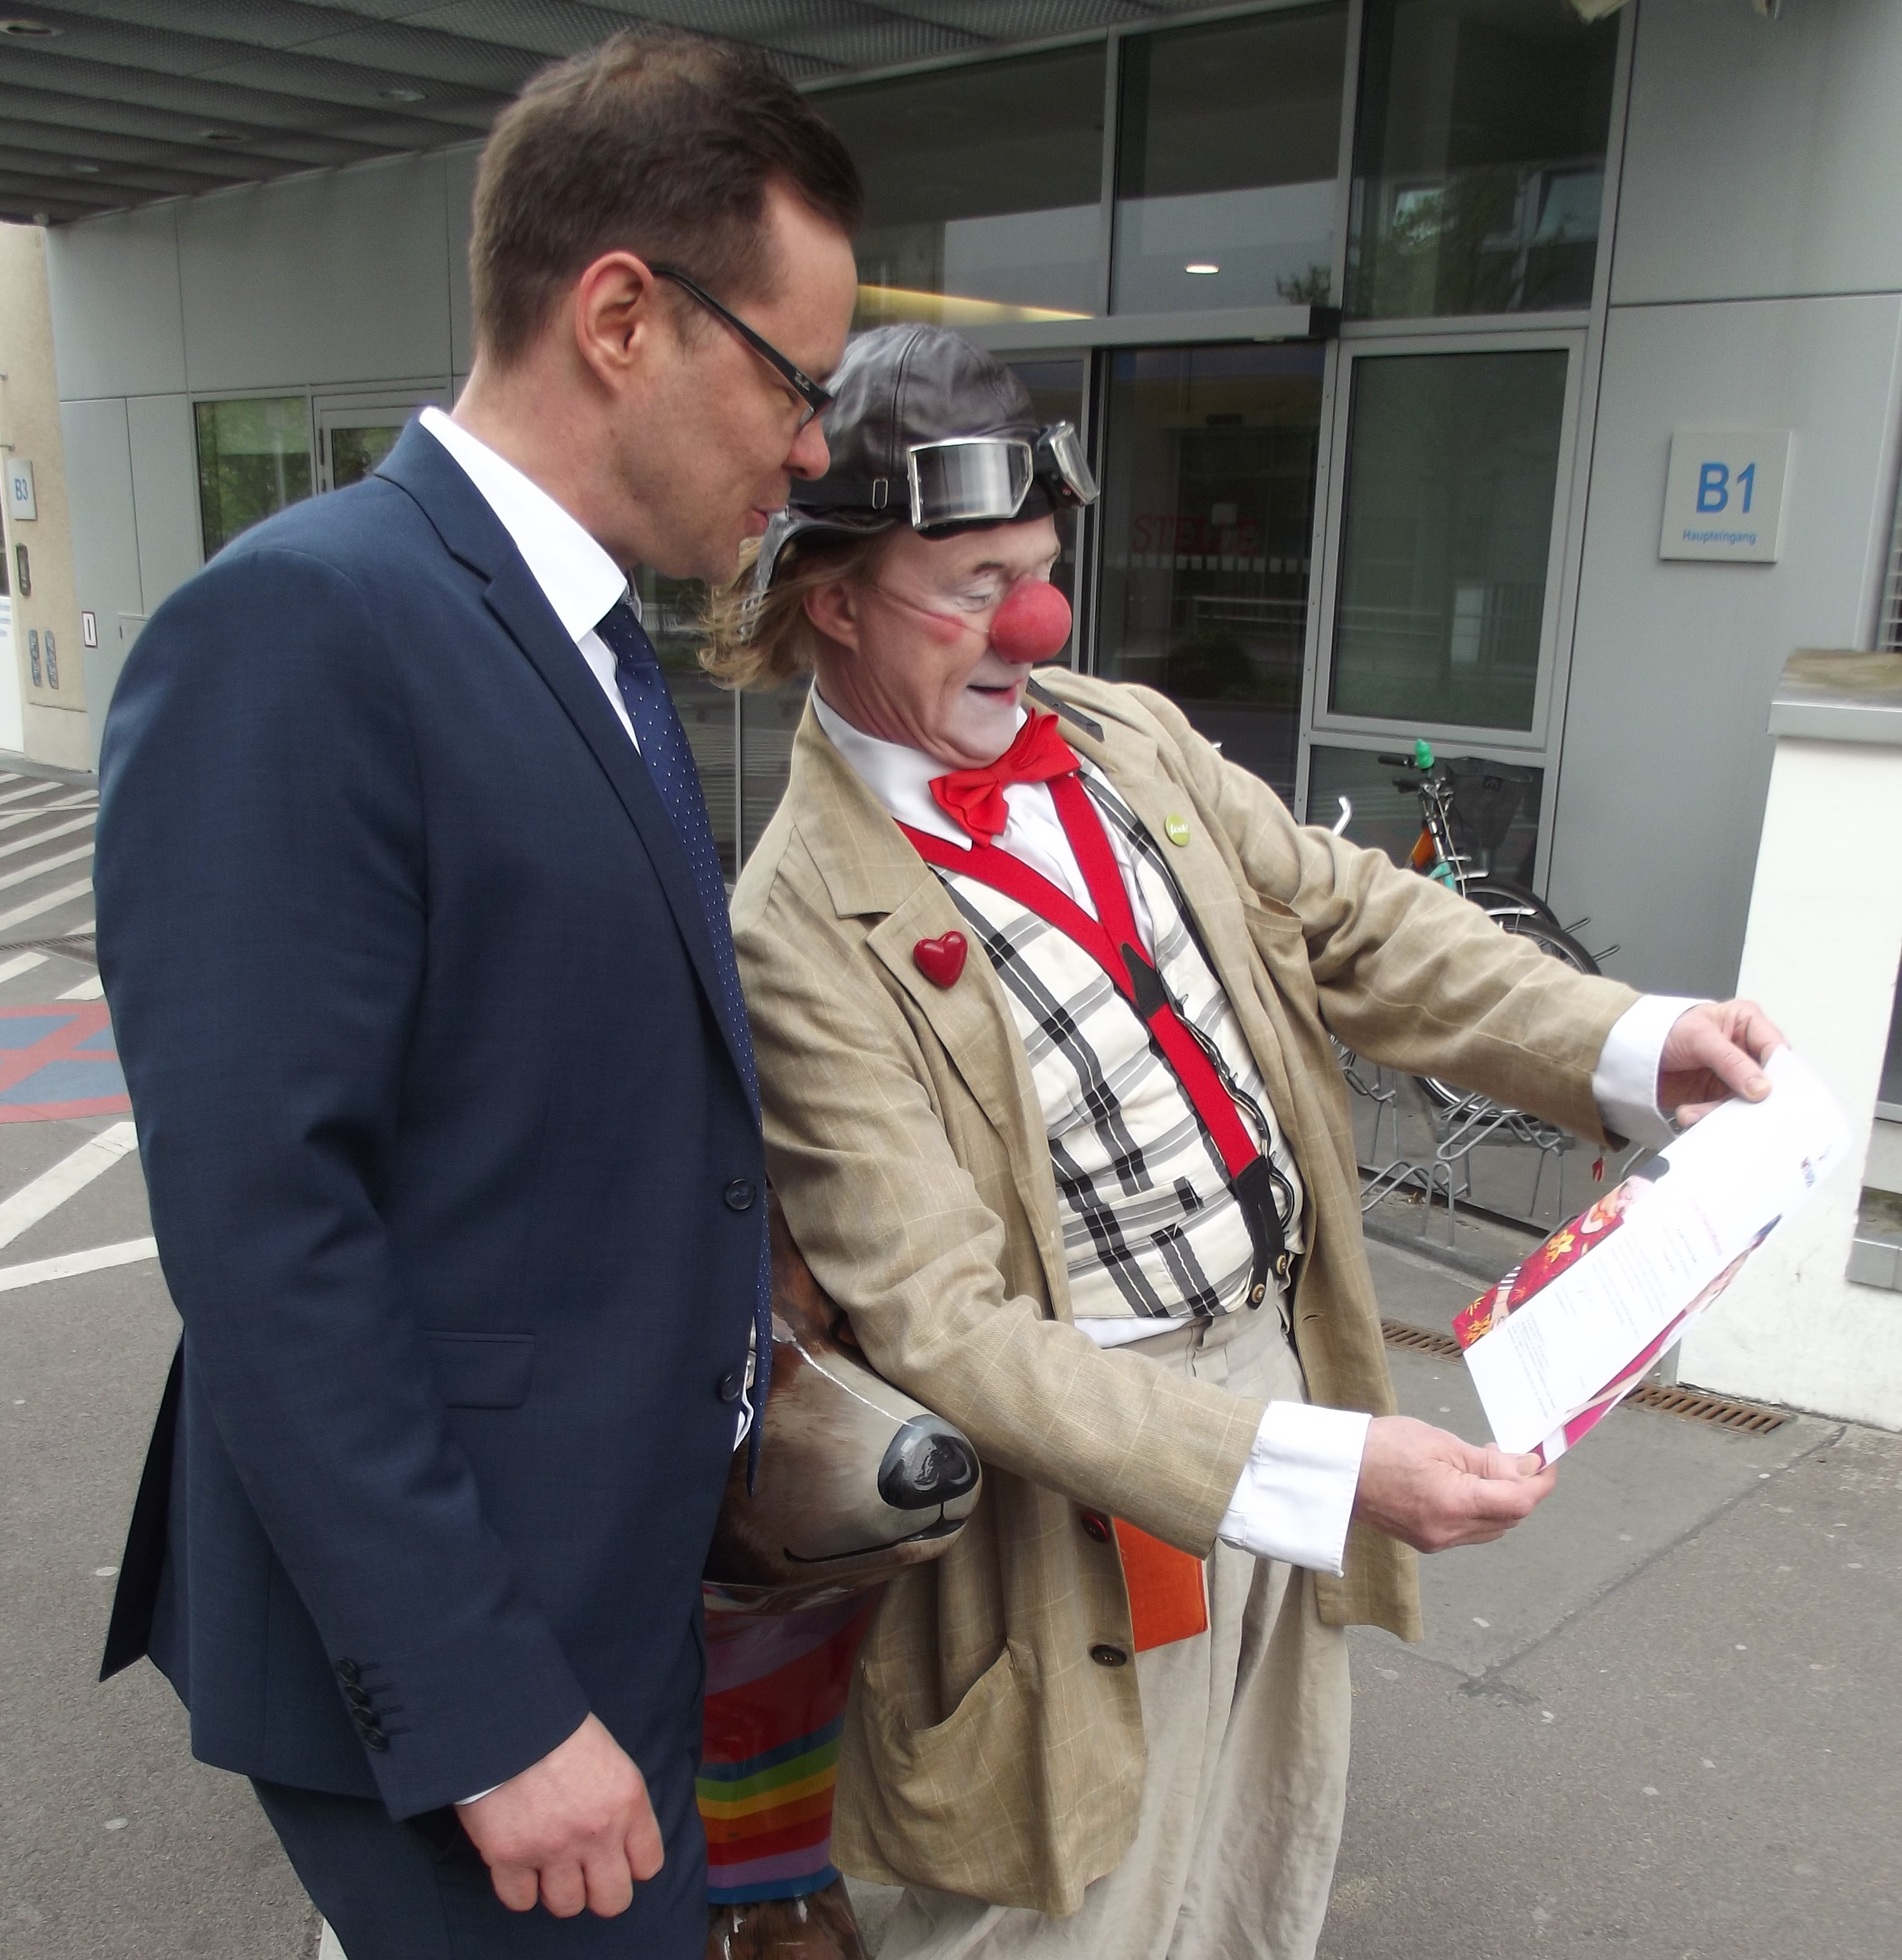 Clown zeigt Manager von Aristo Pharma Urkunde für Patenschaft